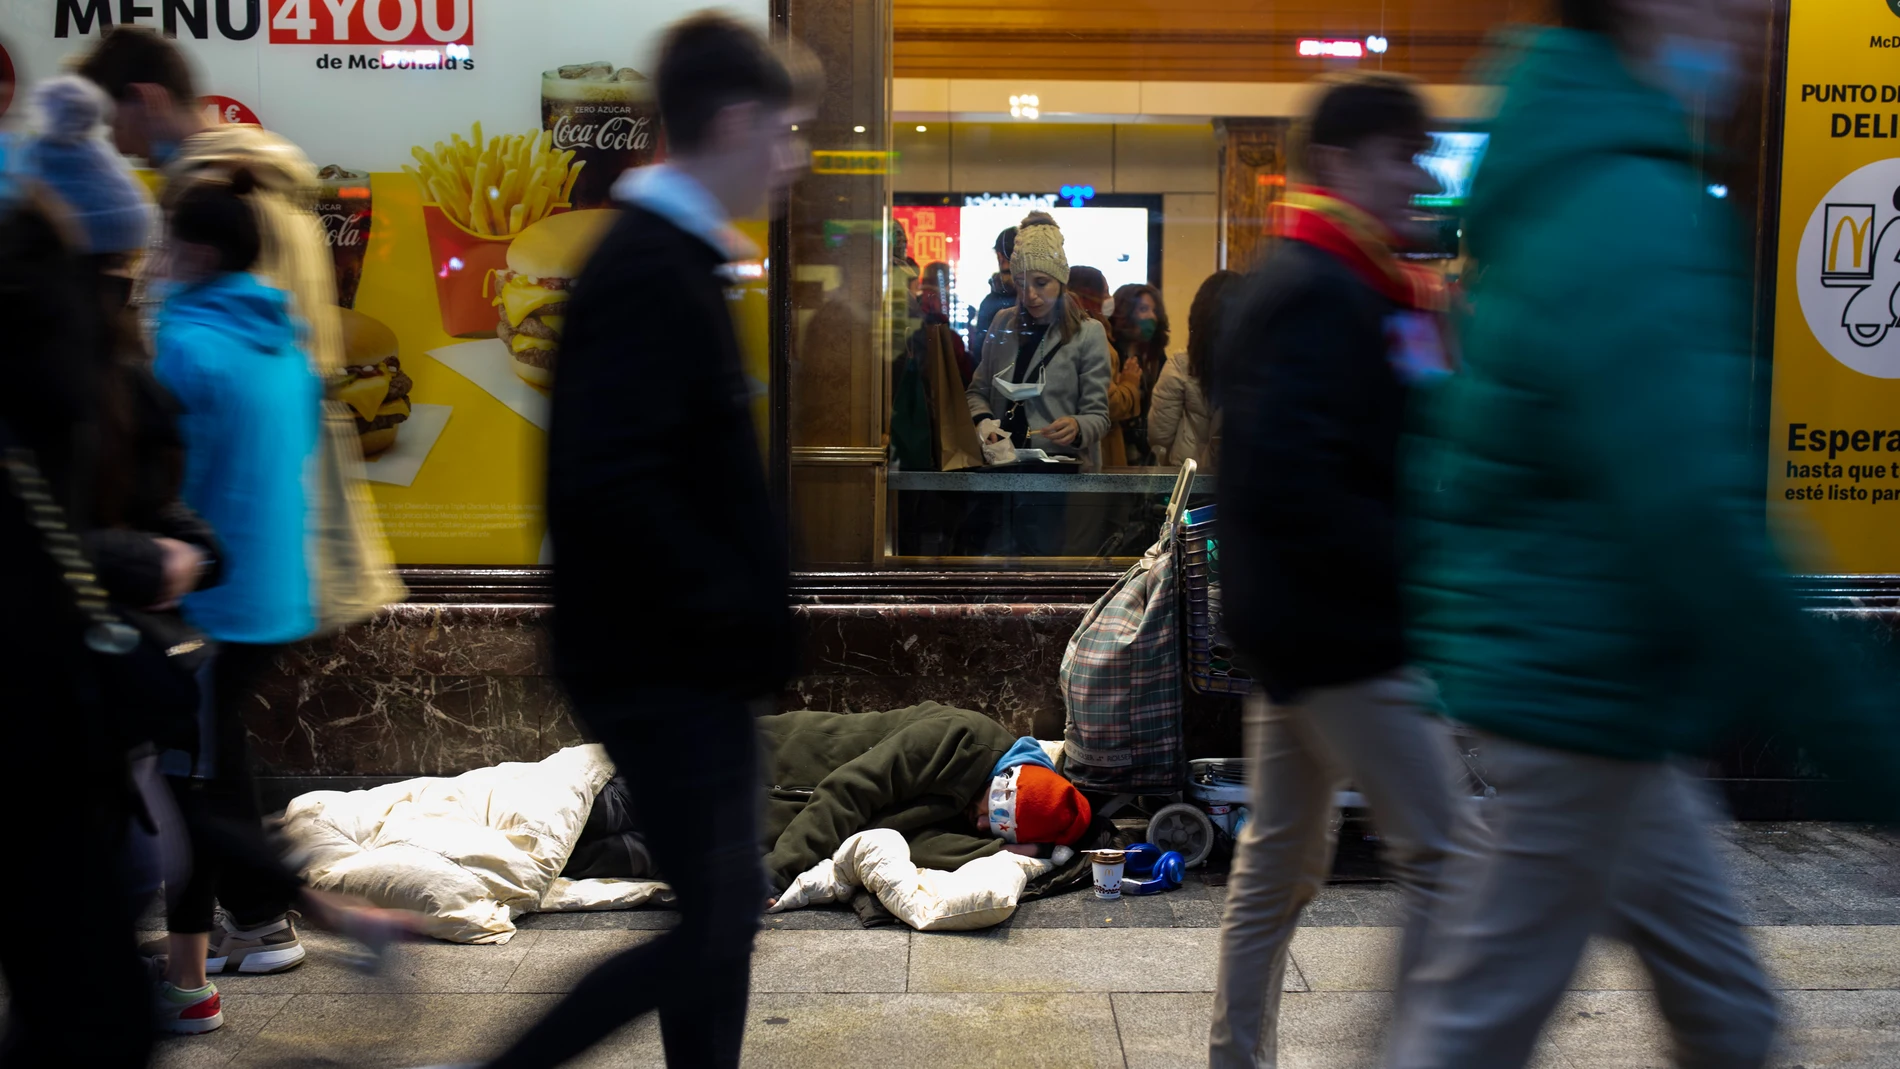 Imagen de una persona sin hogar durmiendo en la puerta de un McDonald's en Gran Vía.